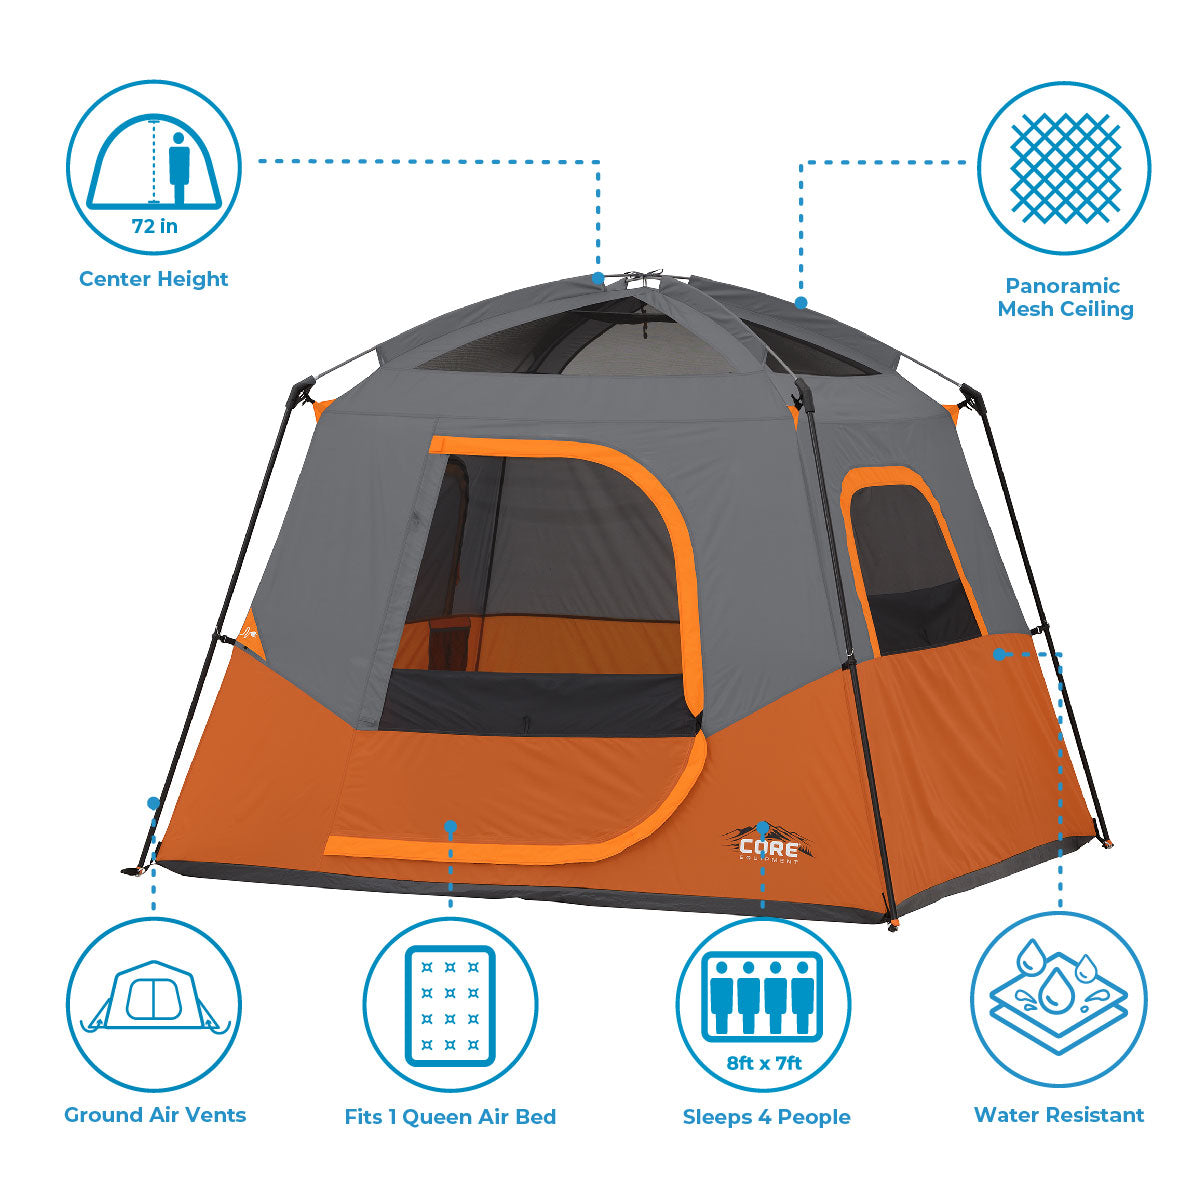 CORE 4 Person & 6 Person Camp Tents, Portable Cabin India